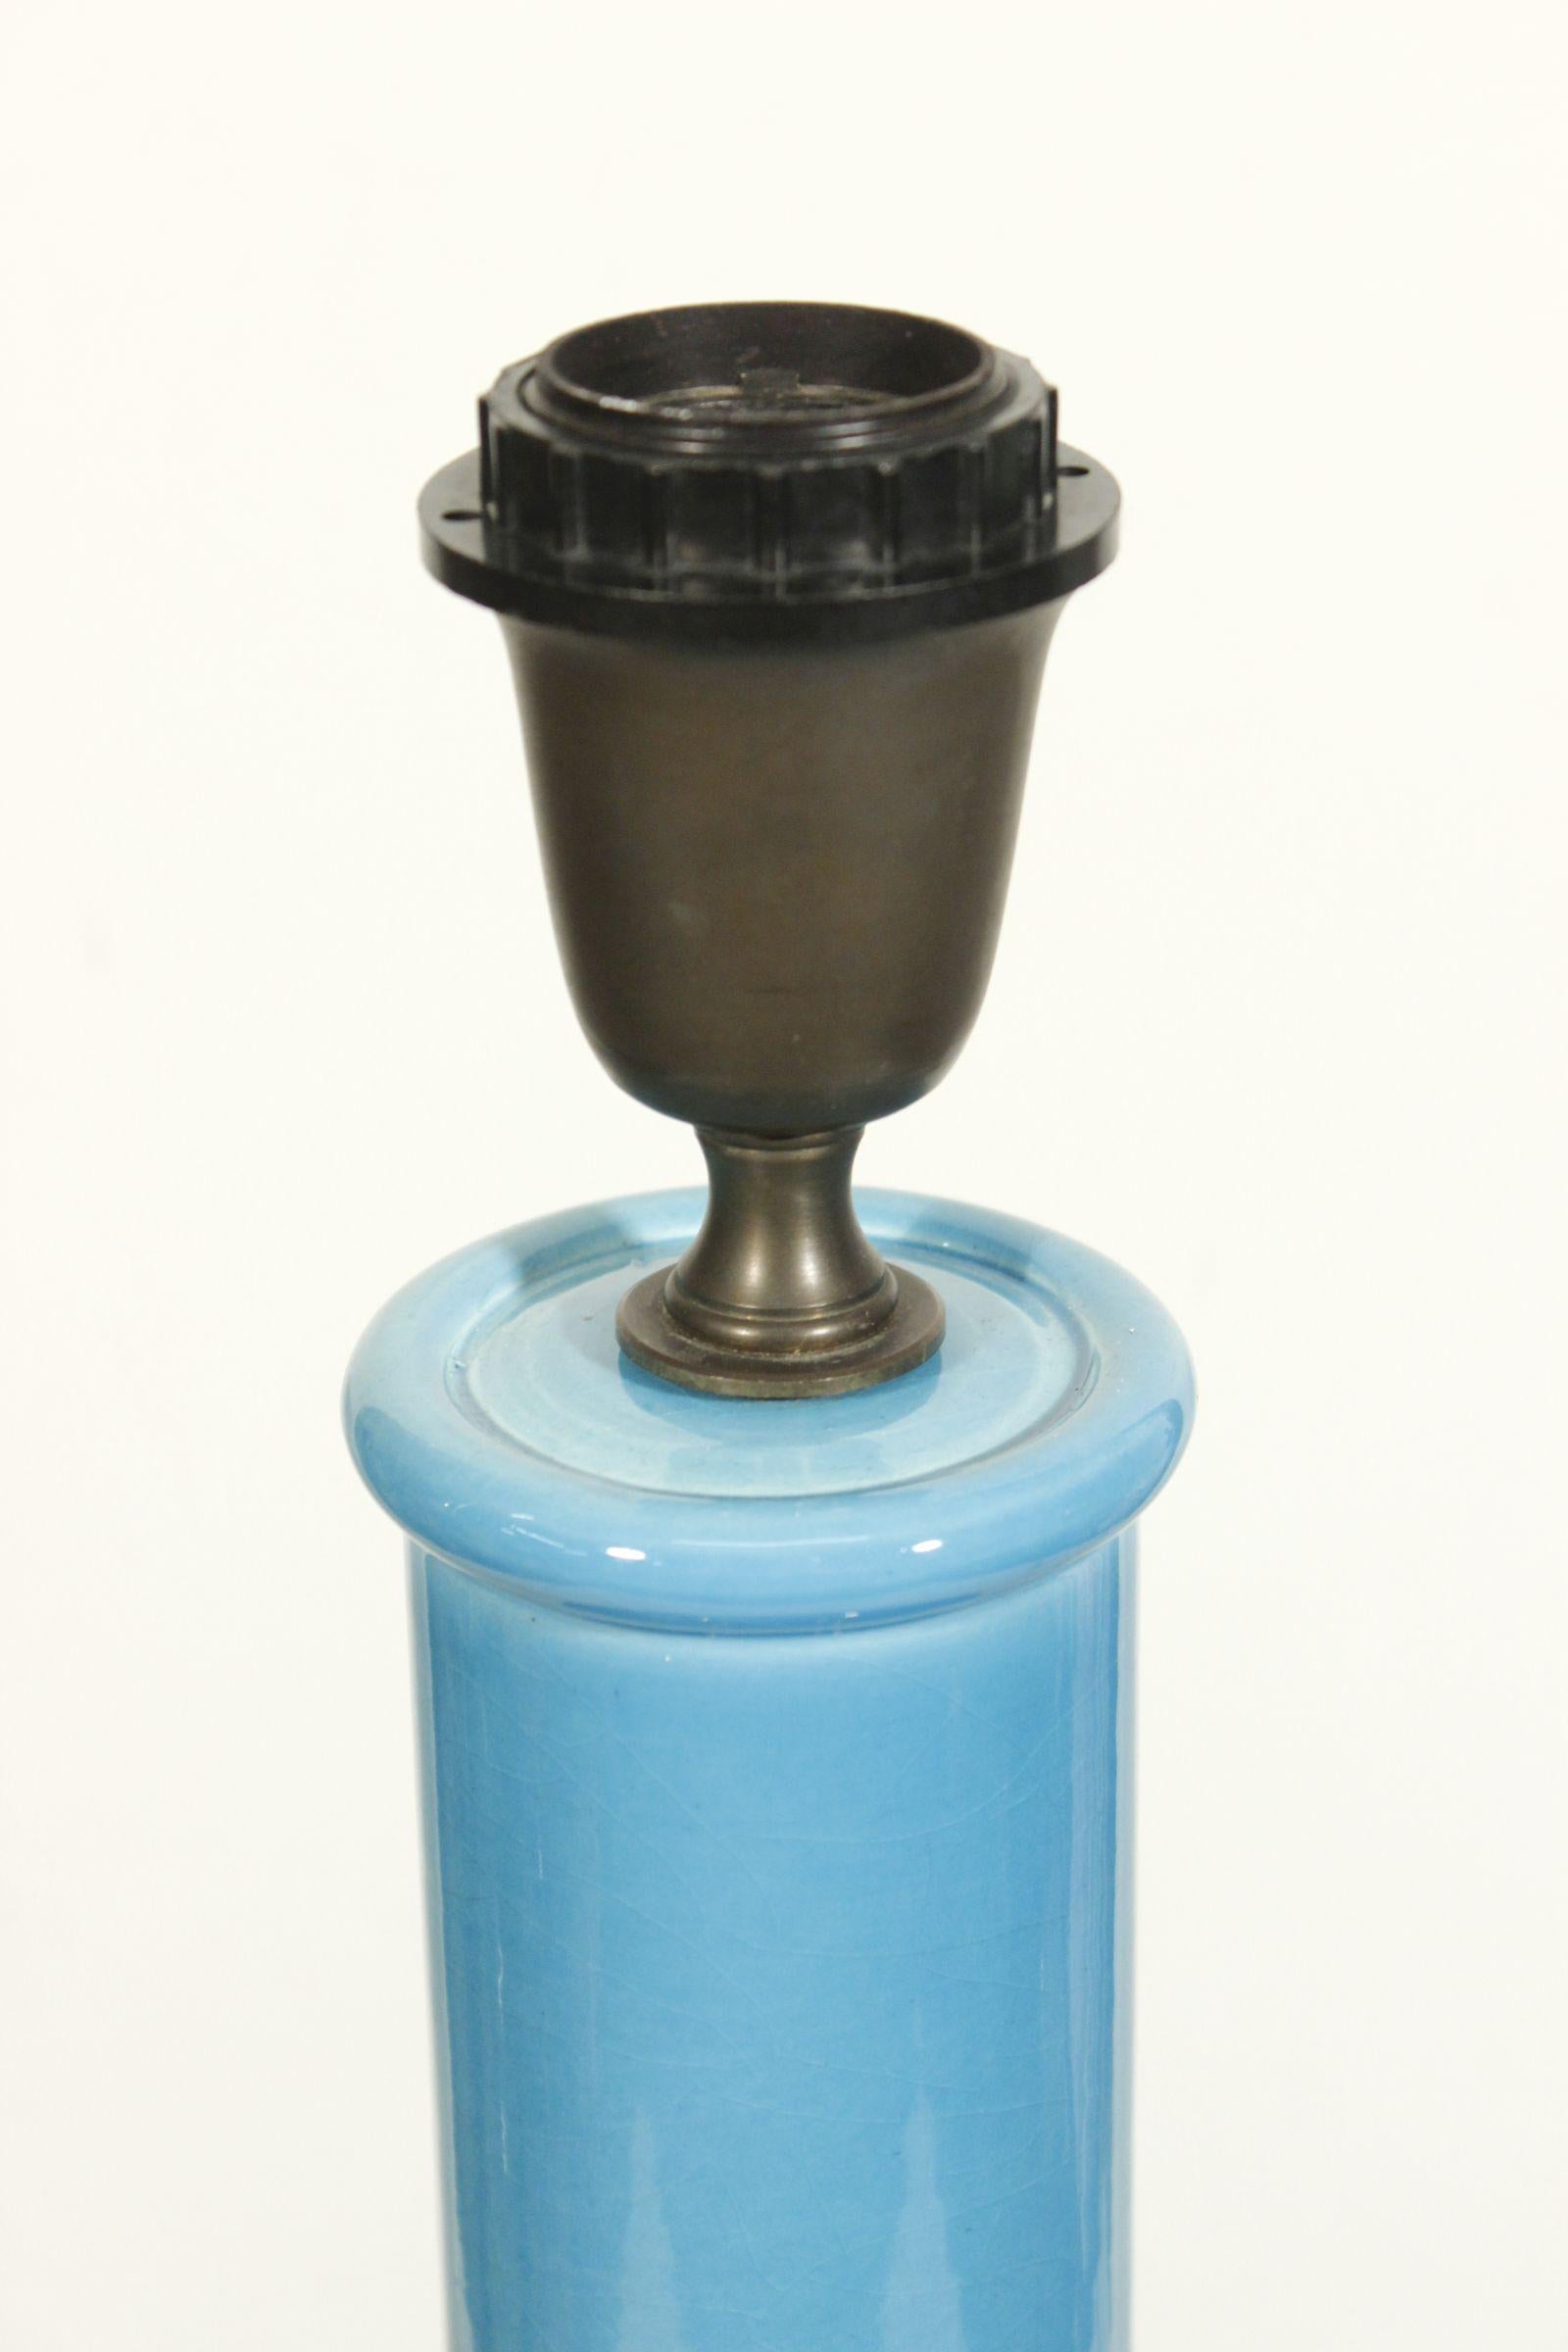 Wunderschöne Vintage-Keramiklampe mit blauer Craquelé-Glasur von Alvino Bagni, Italien um 1960. 

Die Glasur hat eine satte Farbe und einen hohen Glanz, der durch das feine Craquelé noch unterstrichen wird. Die Lampe ist unter dem Sockel mit AB